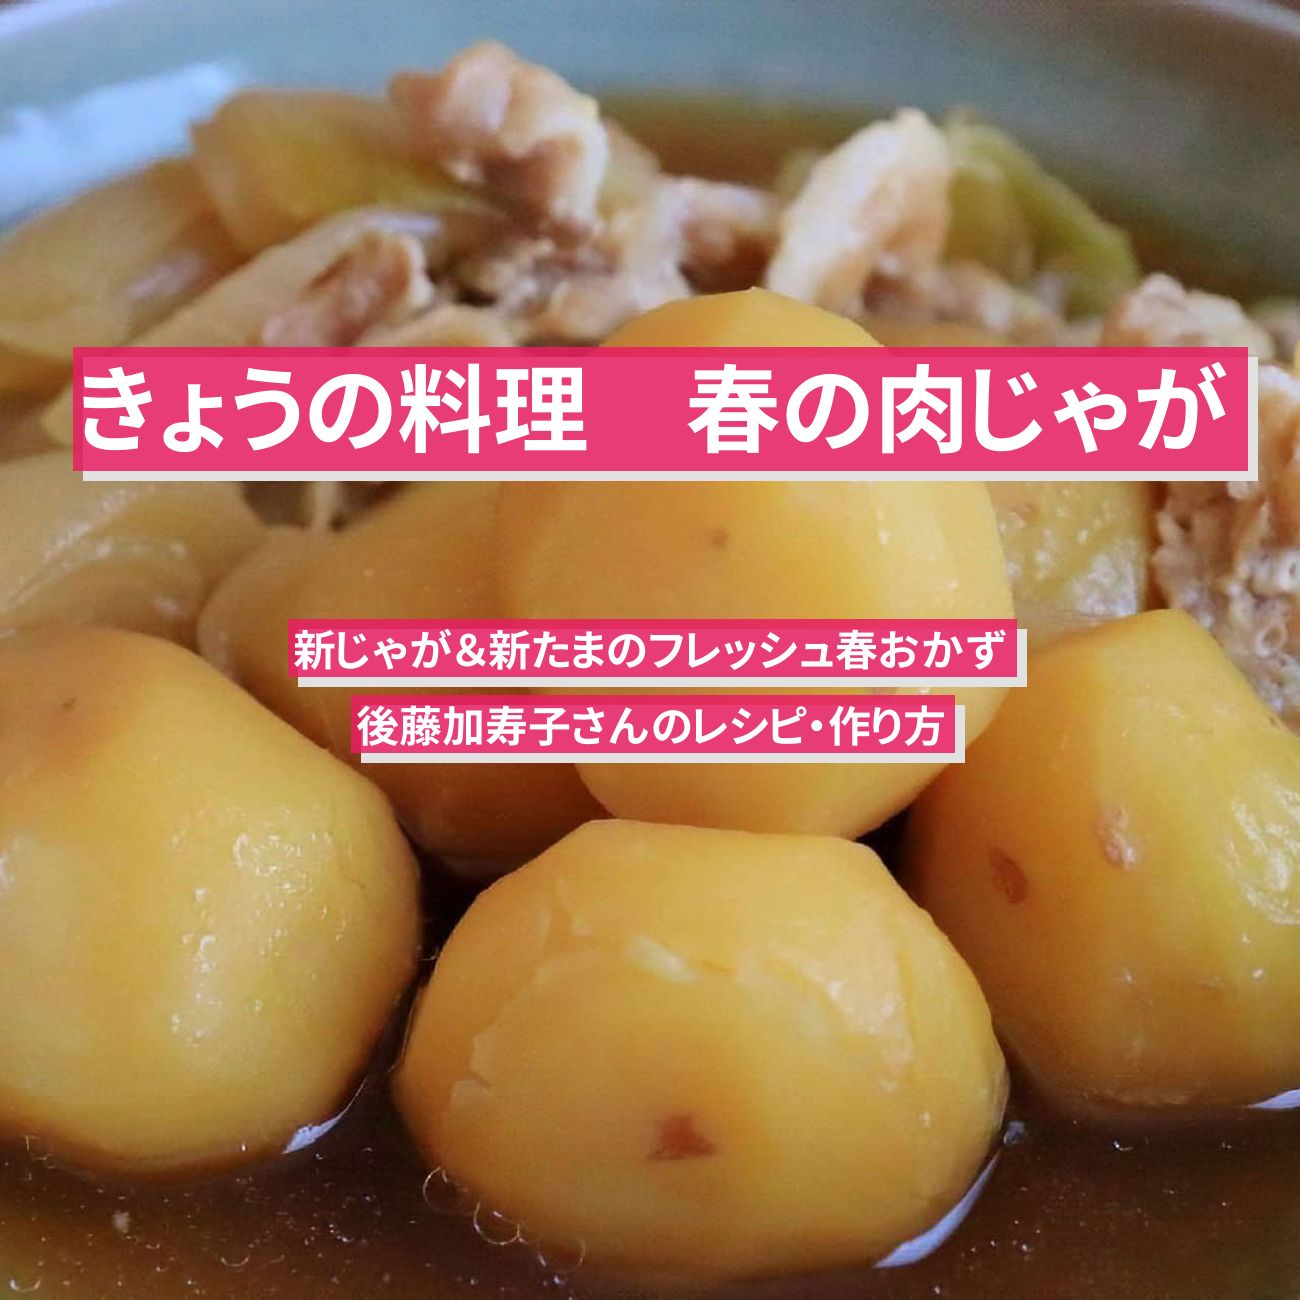 【きょうの料理】『春の肉じゃが』後藤加寿子さんのレシピ・作り方